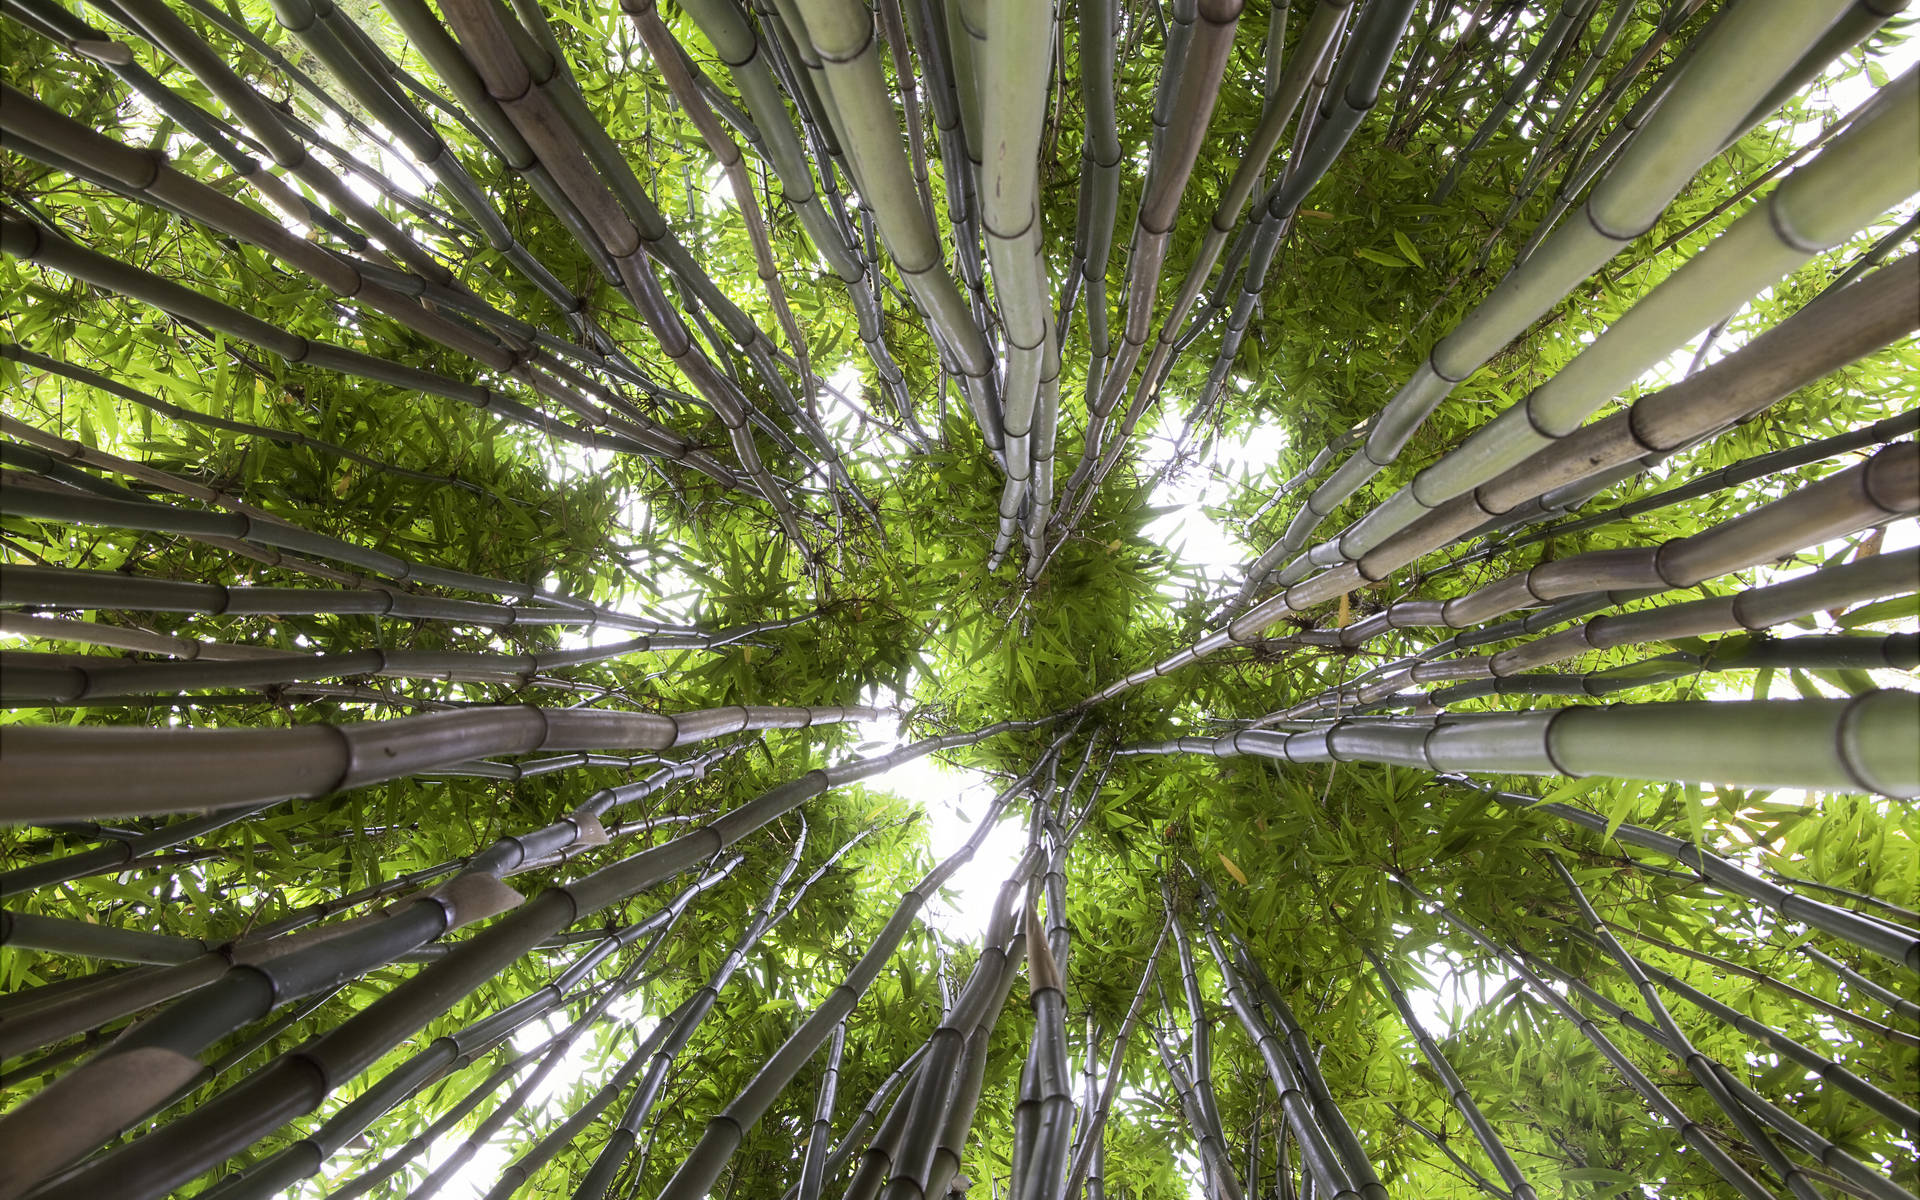 Bamboo Hd Worm's Eye View